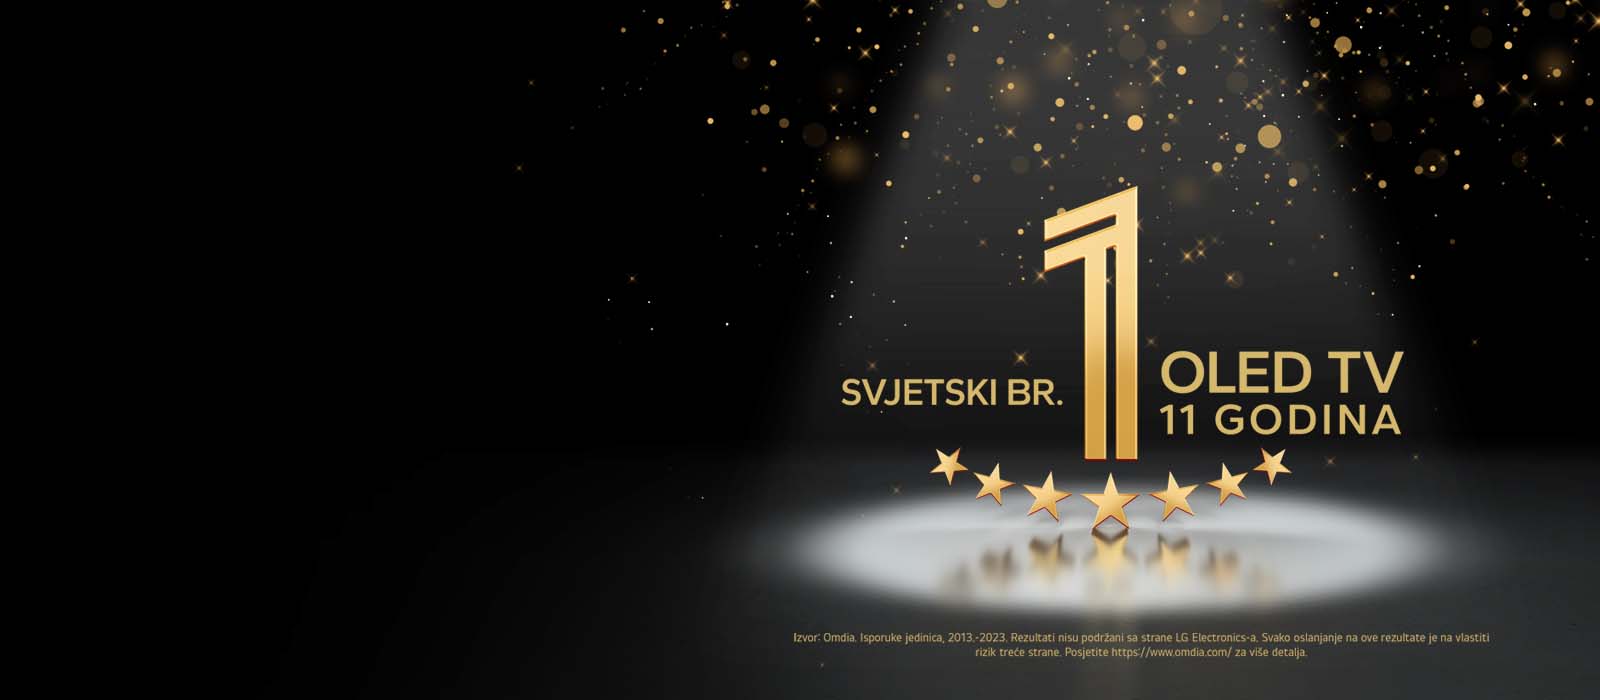 Zlati emblem "Najboljši OLED TV na svetu že 11 let" na črnem ozadju. Reflektor osvetljuje emblem, zlate abstraktne zvezde pa napolnjujejo nebo nad njim.